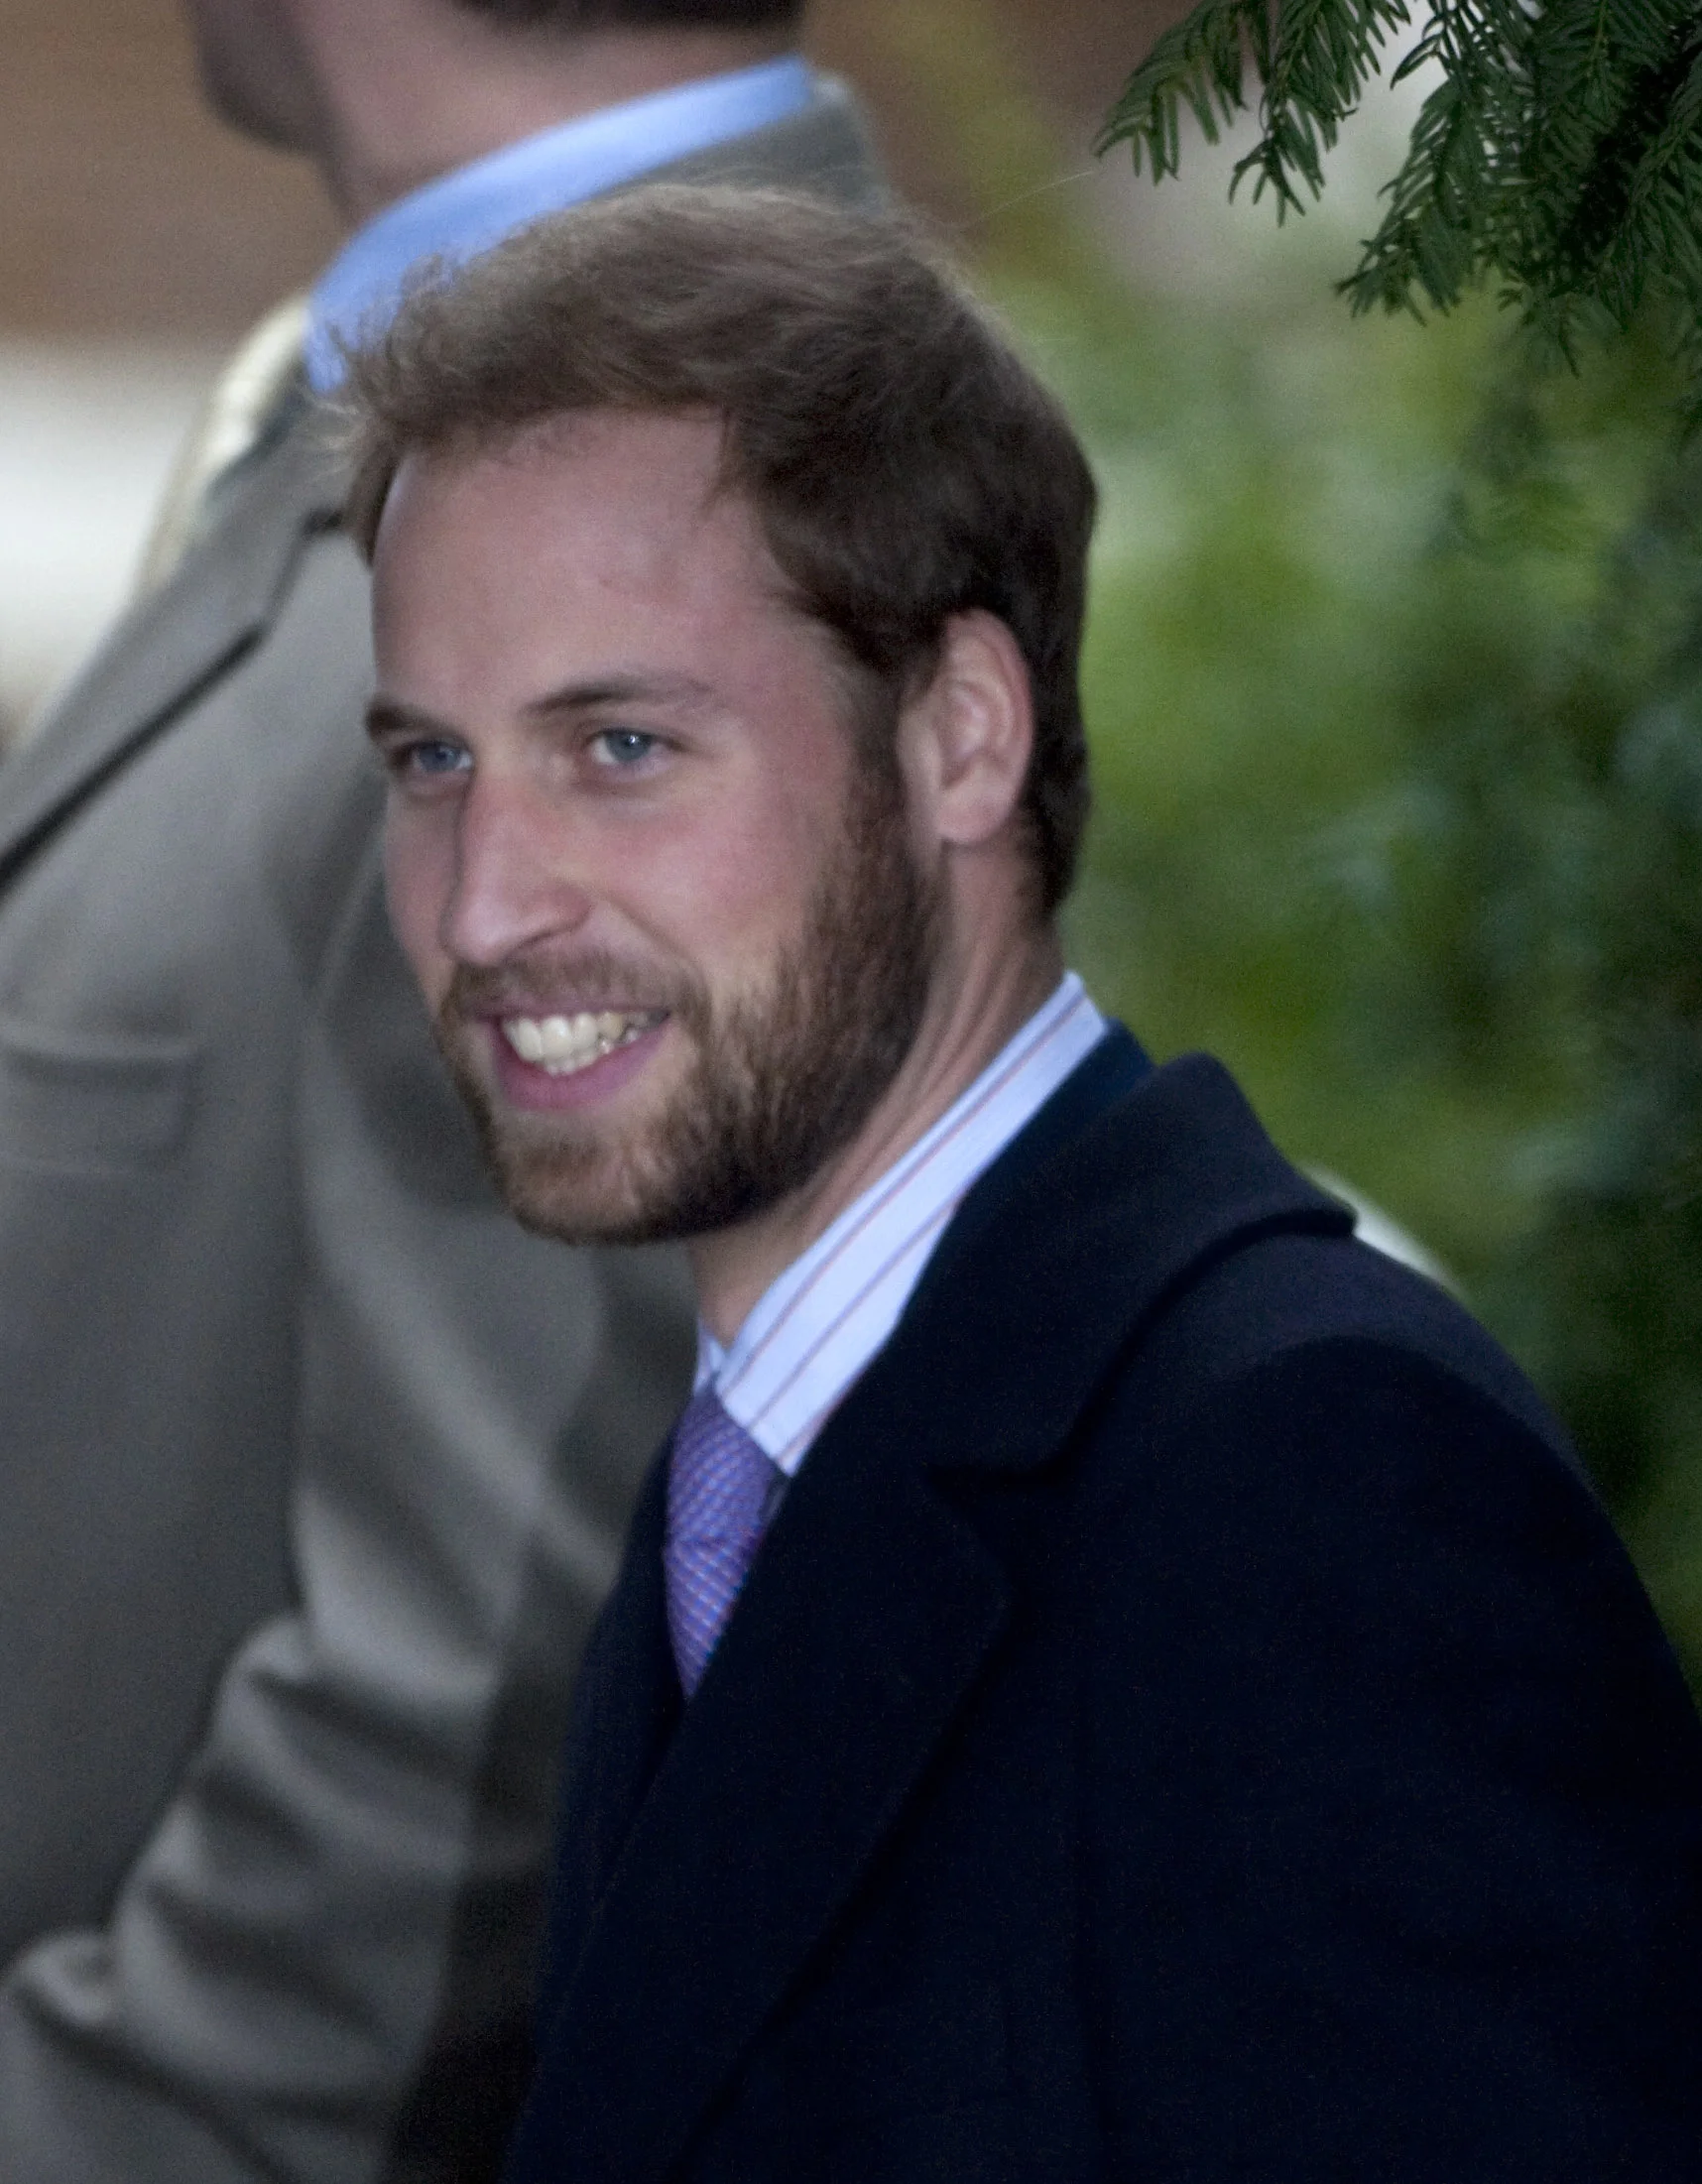 Такой брутальный и сексуальный бородач: сеть в шоке, что принц Уильям ранее имел бороду - фото 420932